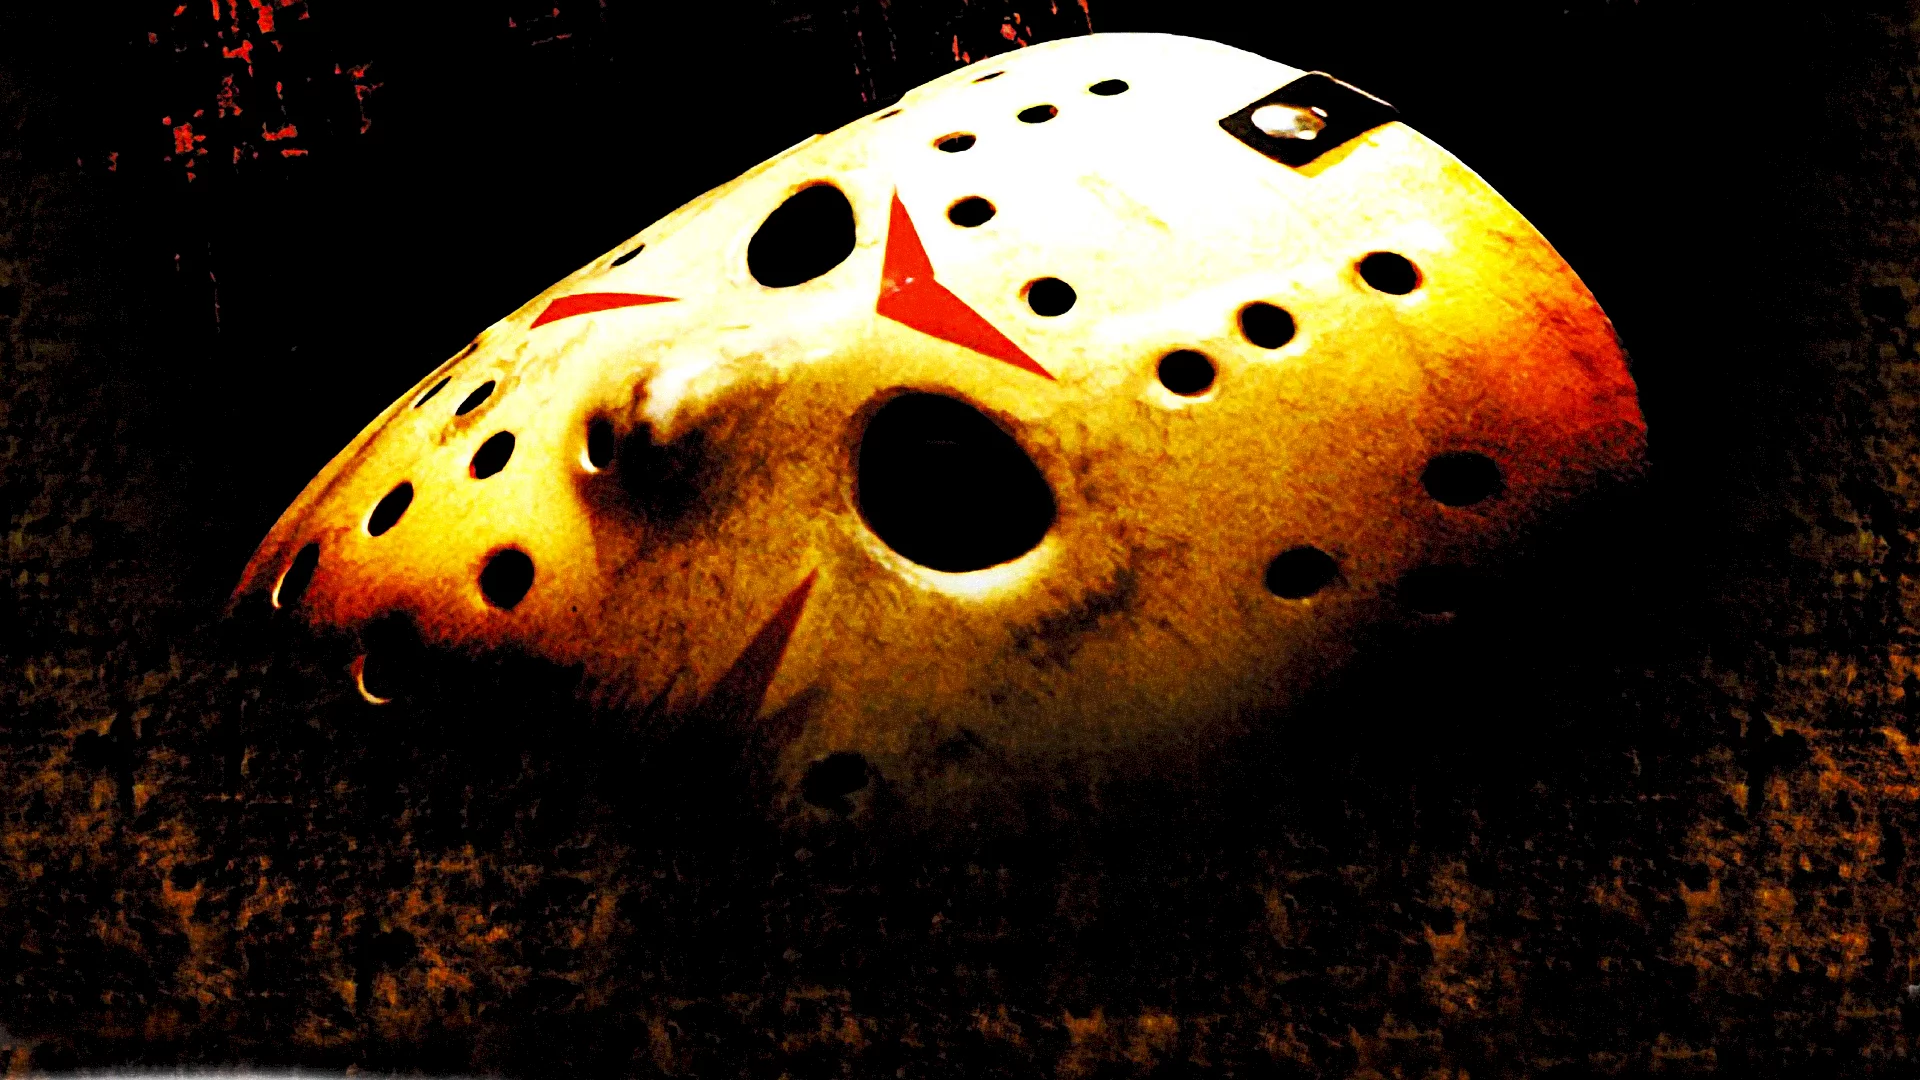 Photo du film : Vendredi 13, chapitre VI : Jason le mort-vivant